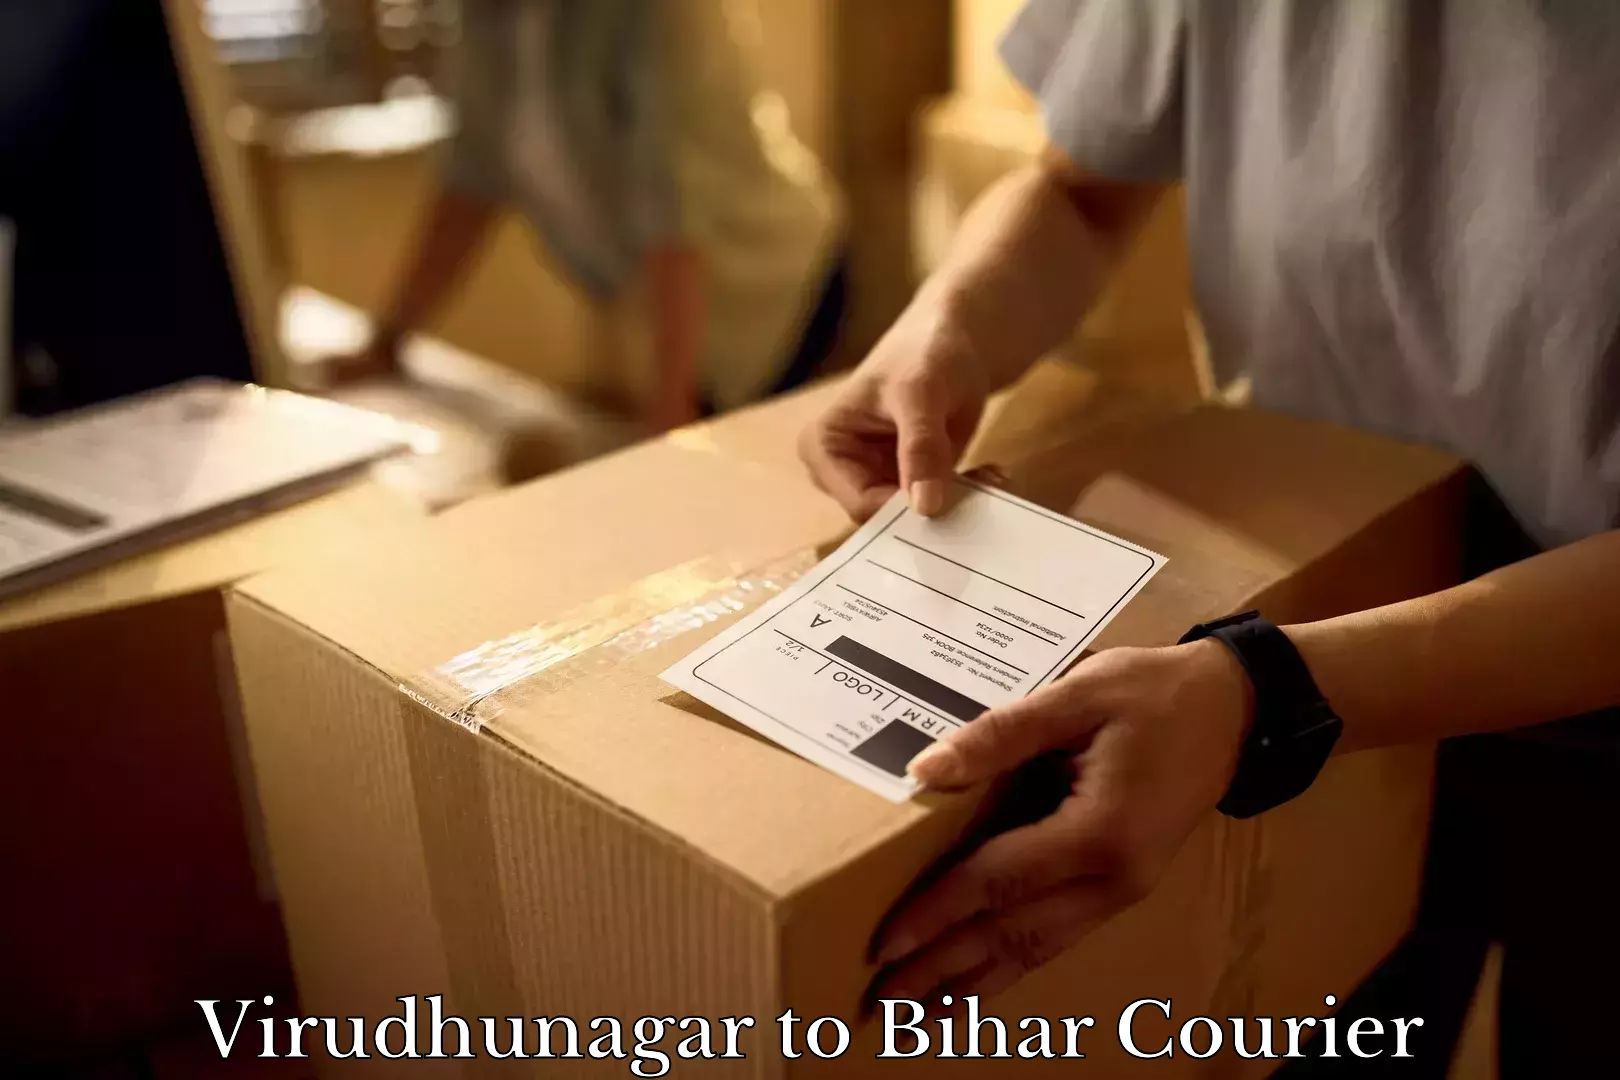 Professional packing services Virudhunagar to Aurai